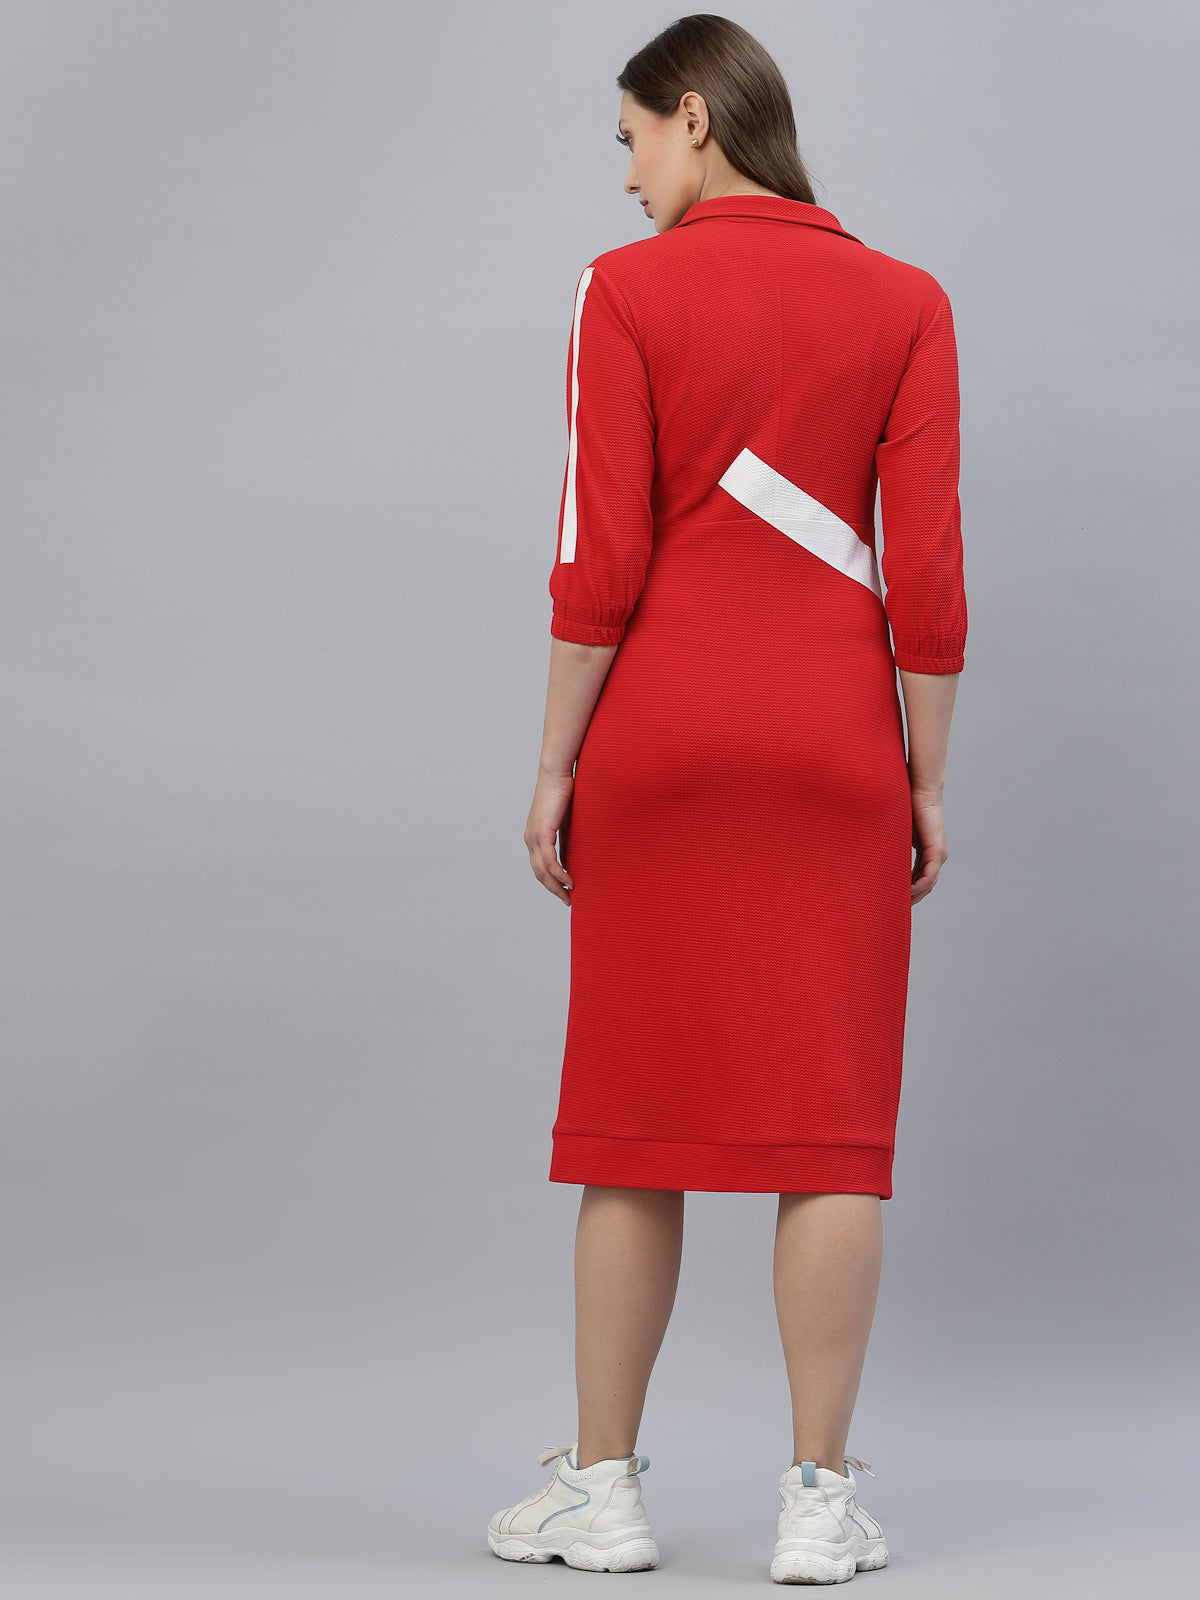 Red Sporty chic designer dress by Just Billi, Luxury athleisure wear designer Just Billi